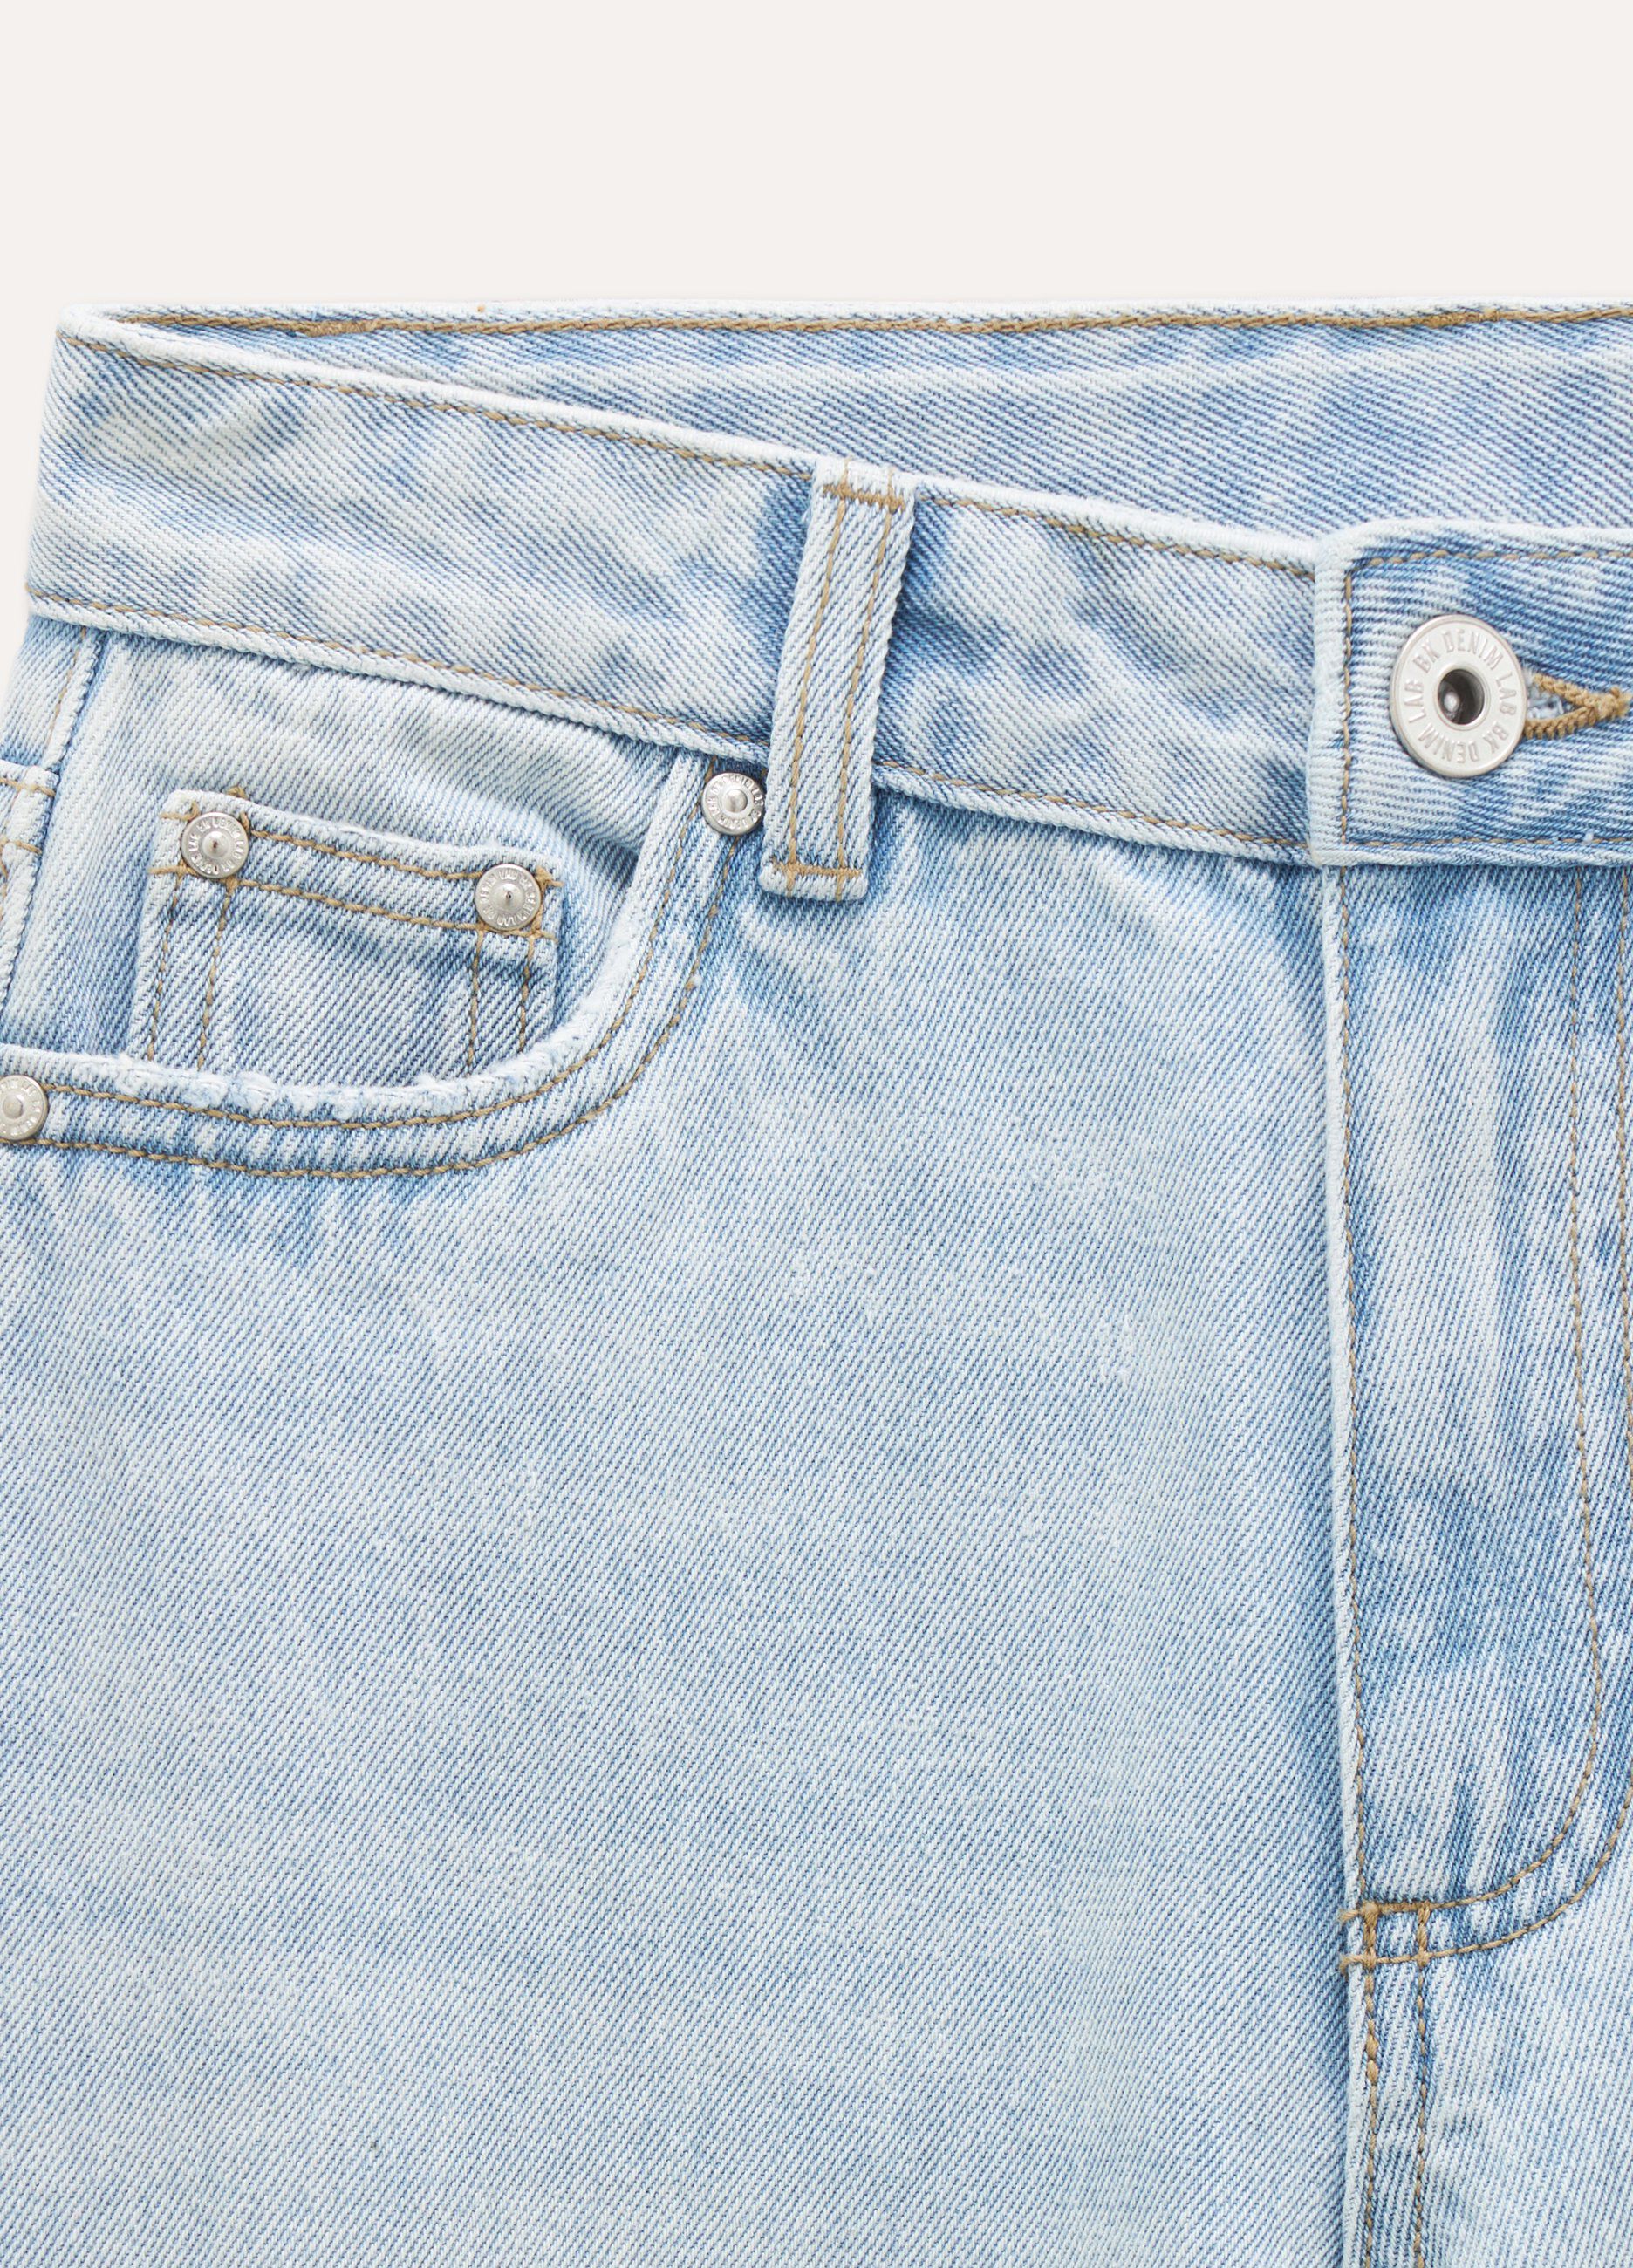 Jeans in puro cotone wide leg ragazza_1